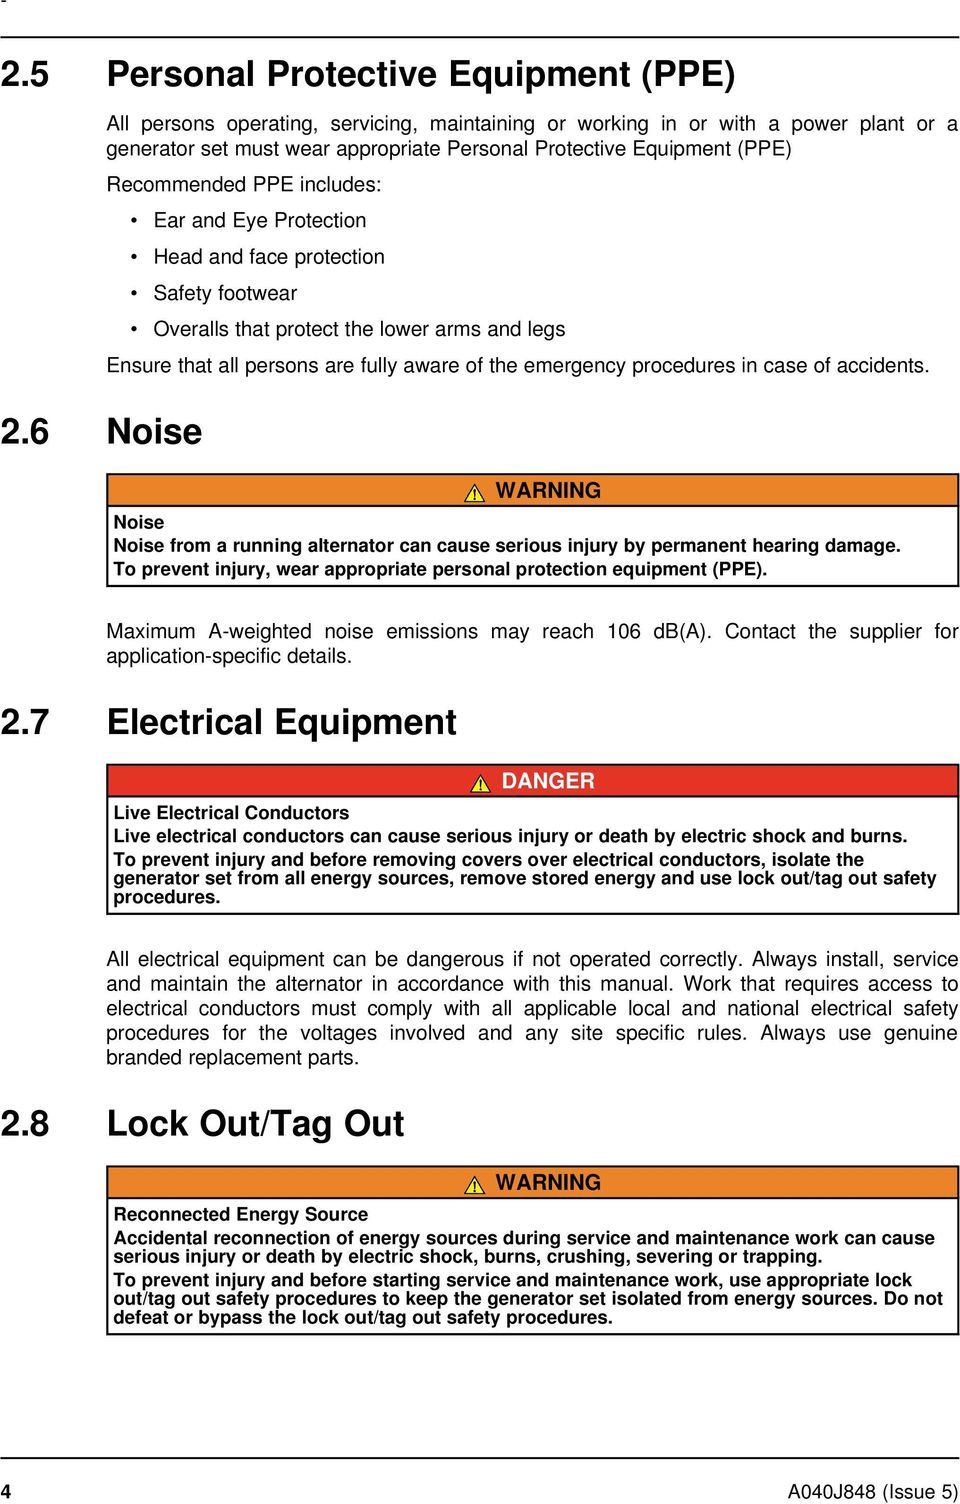 stamford alternator wiring diagram manual